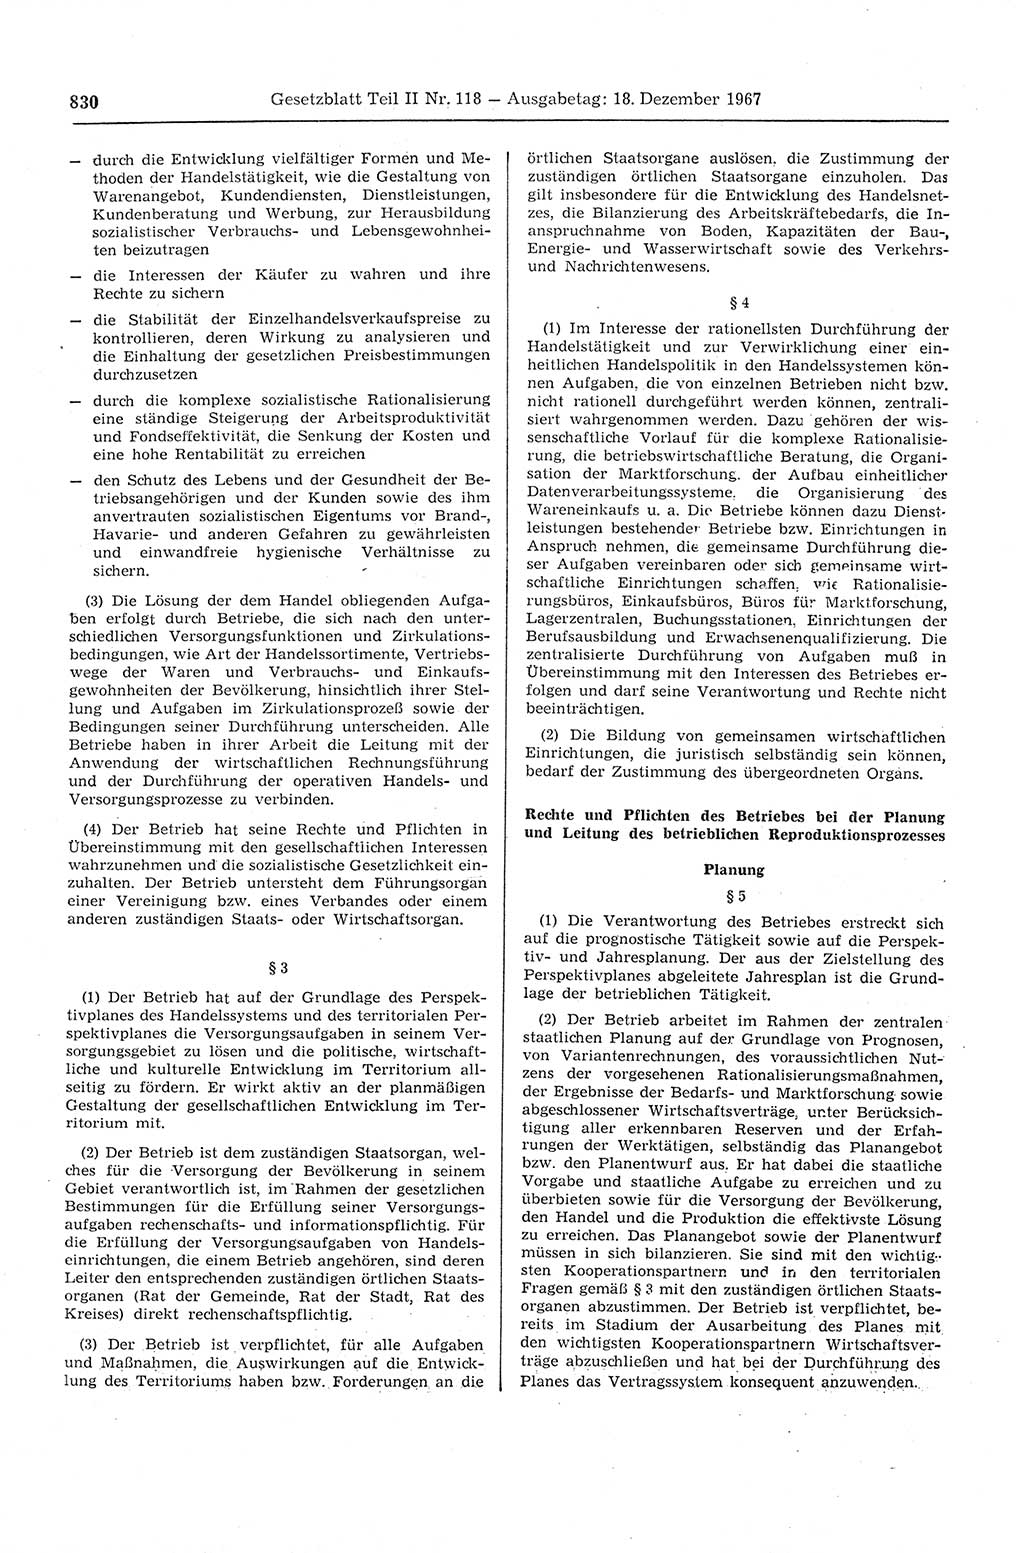 Gesetzblatt (GBl.) der Deutschen Demokratischen Republik (DDR) Teil ⅠⅠ 1967, Seite 830 (GBl. DDR ⅠⅠ 1967, S. 830)